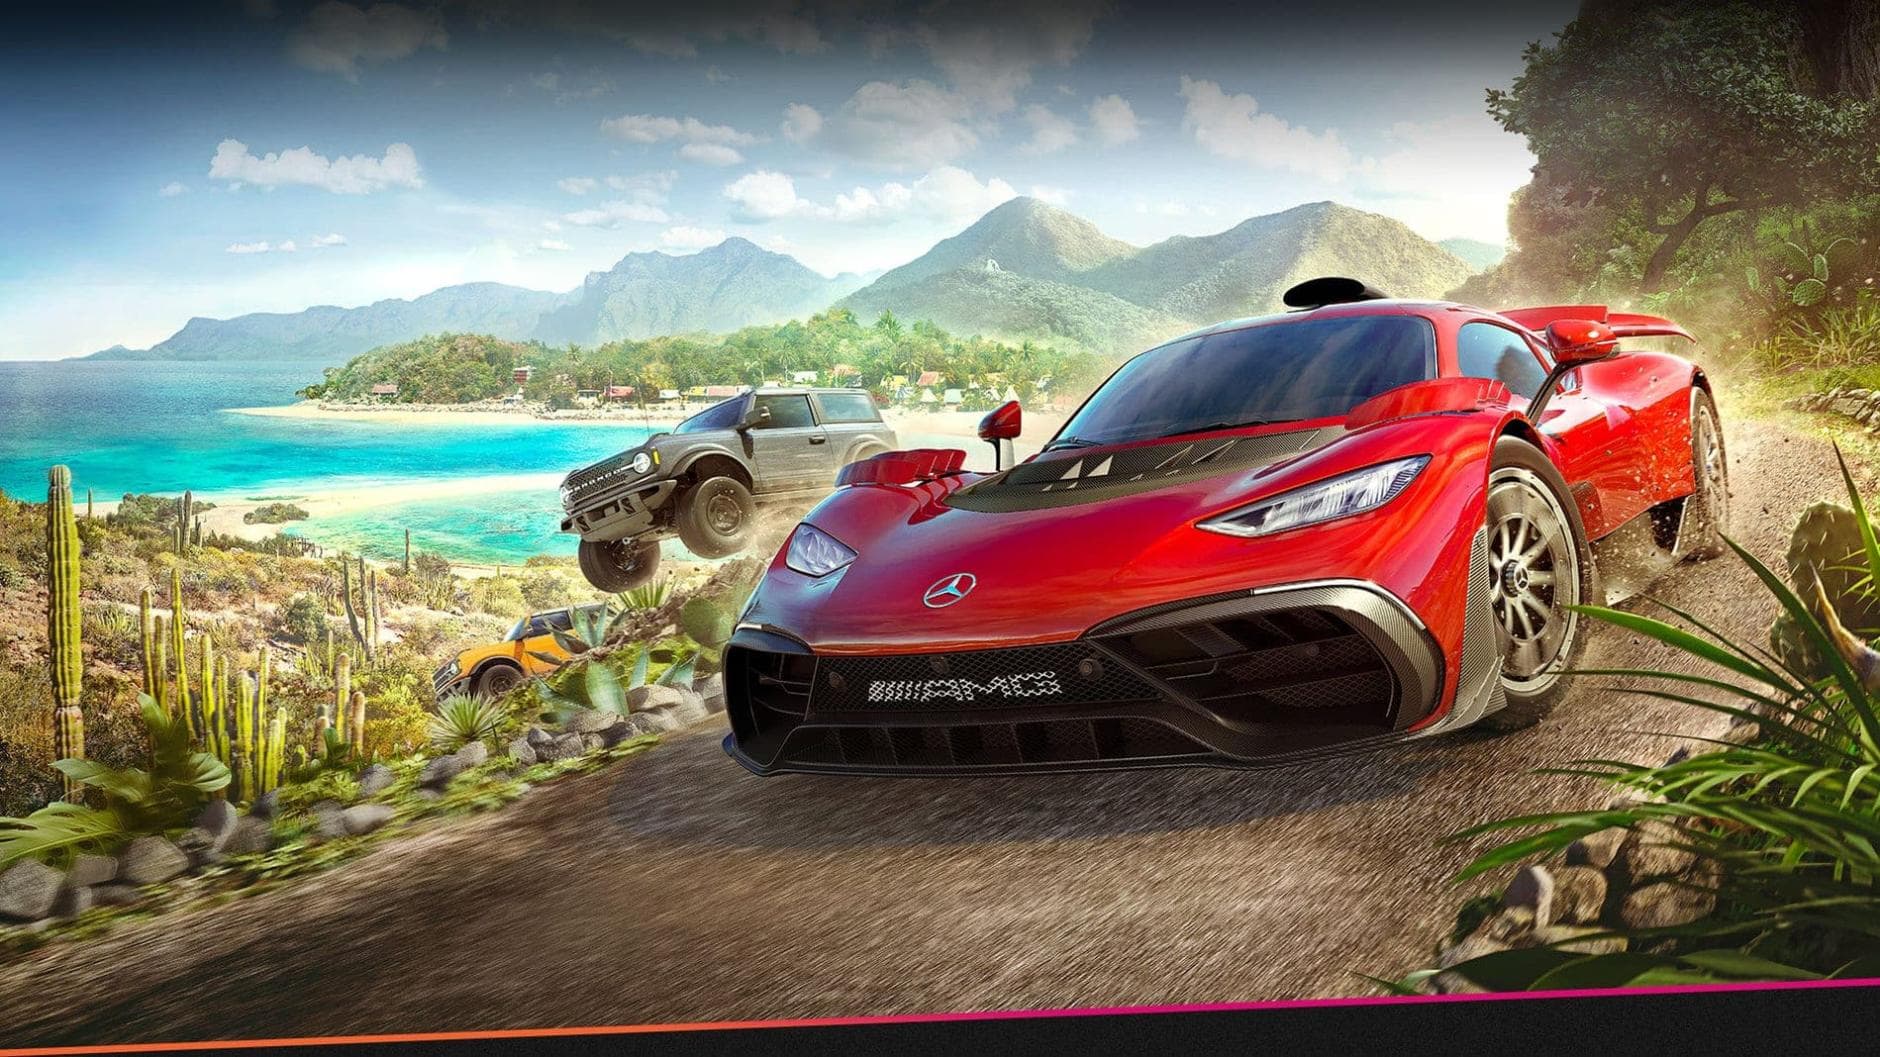 Forza Horizon 6 soll bereits in Entwicklung sein - Geht's nach Japan?